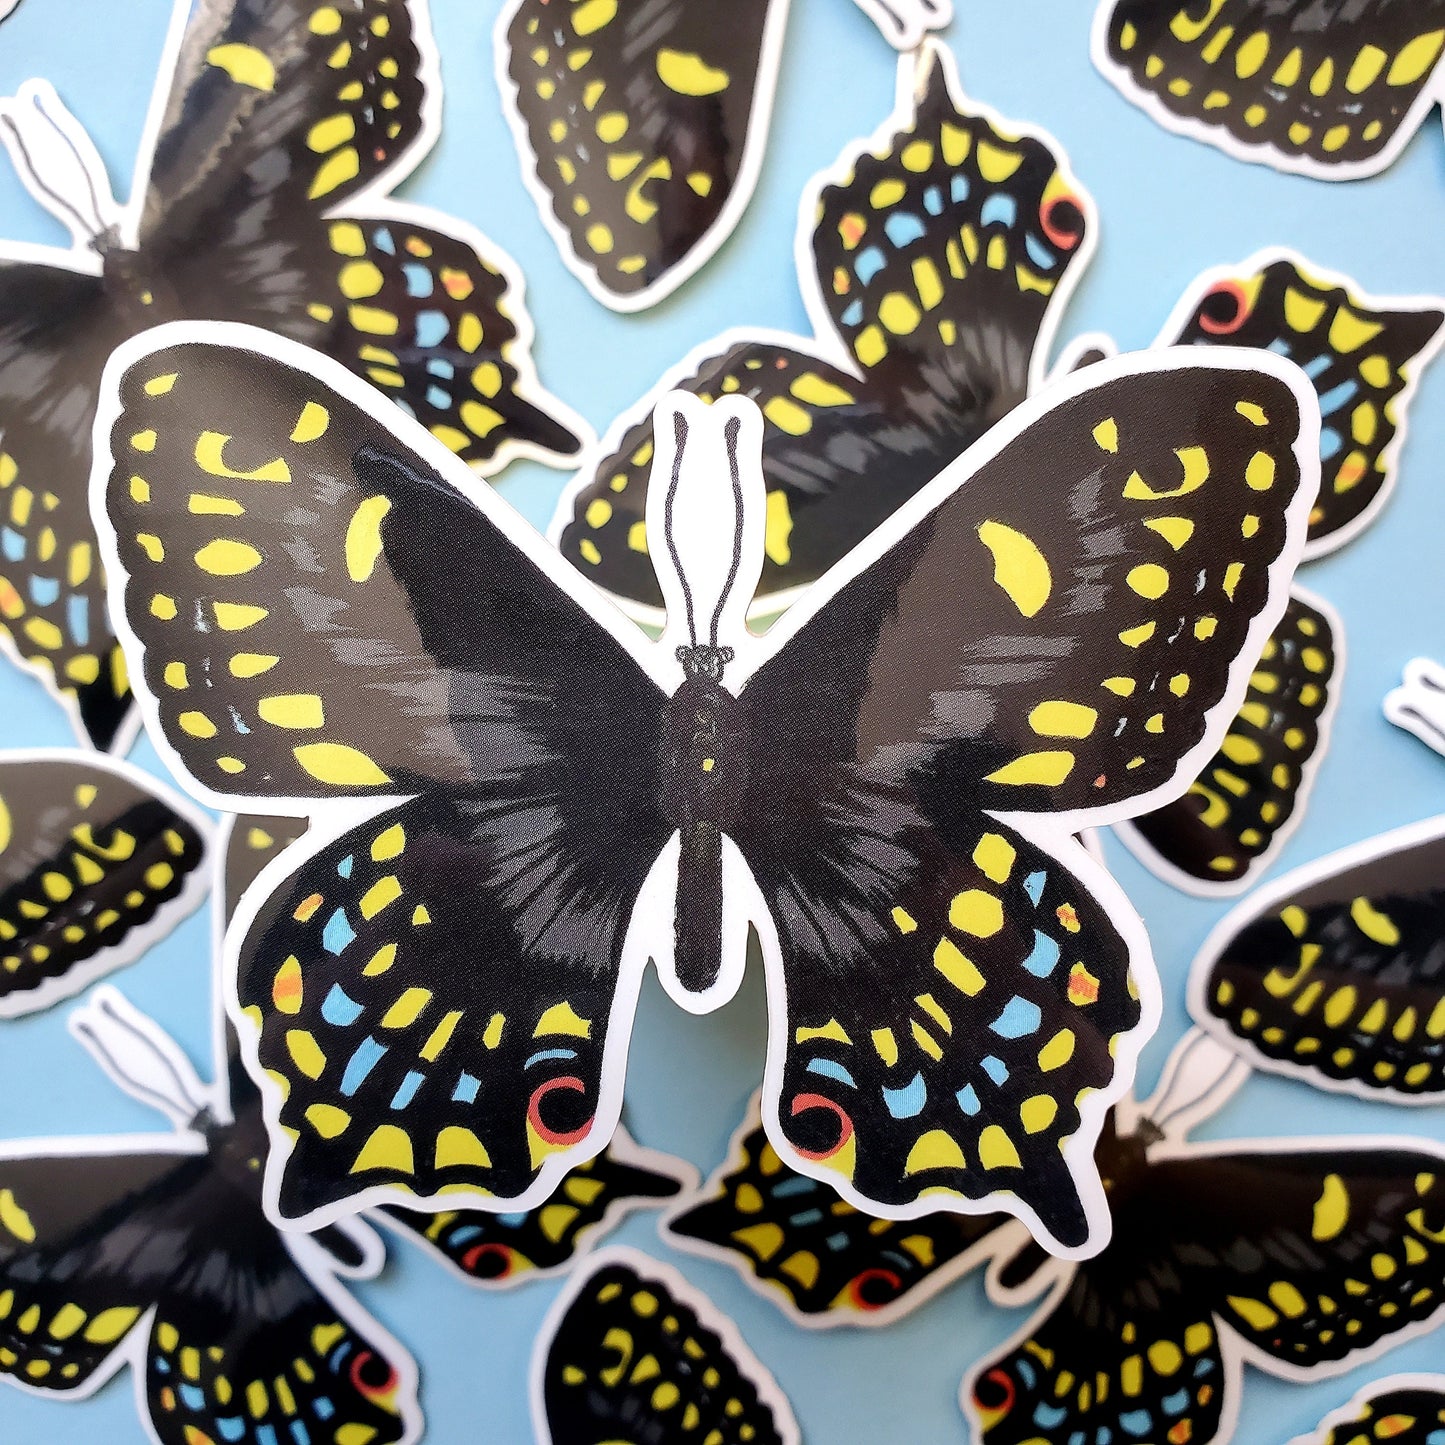 Black Swallowtail Butterfly Sticker